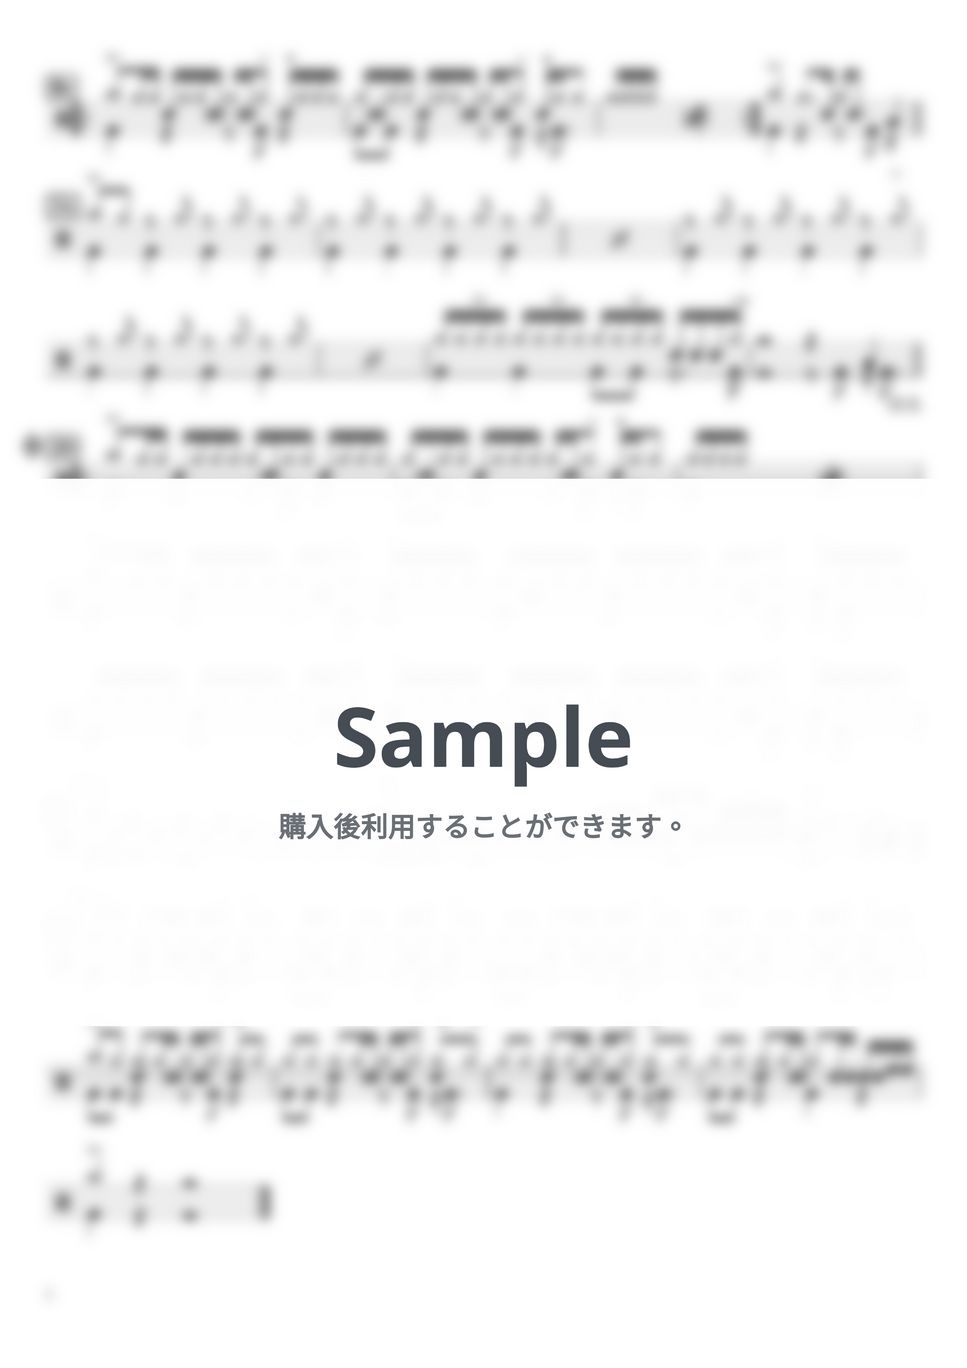 SEKAI NO OWARI - Habit (ドラム譜のみ) by YUTO